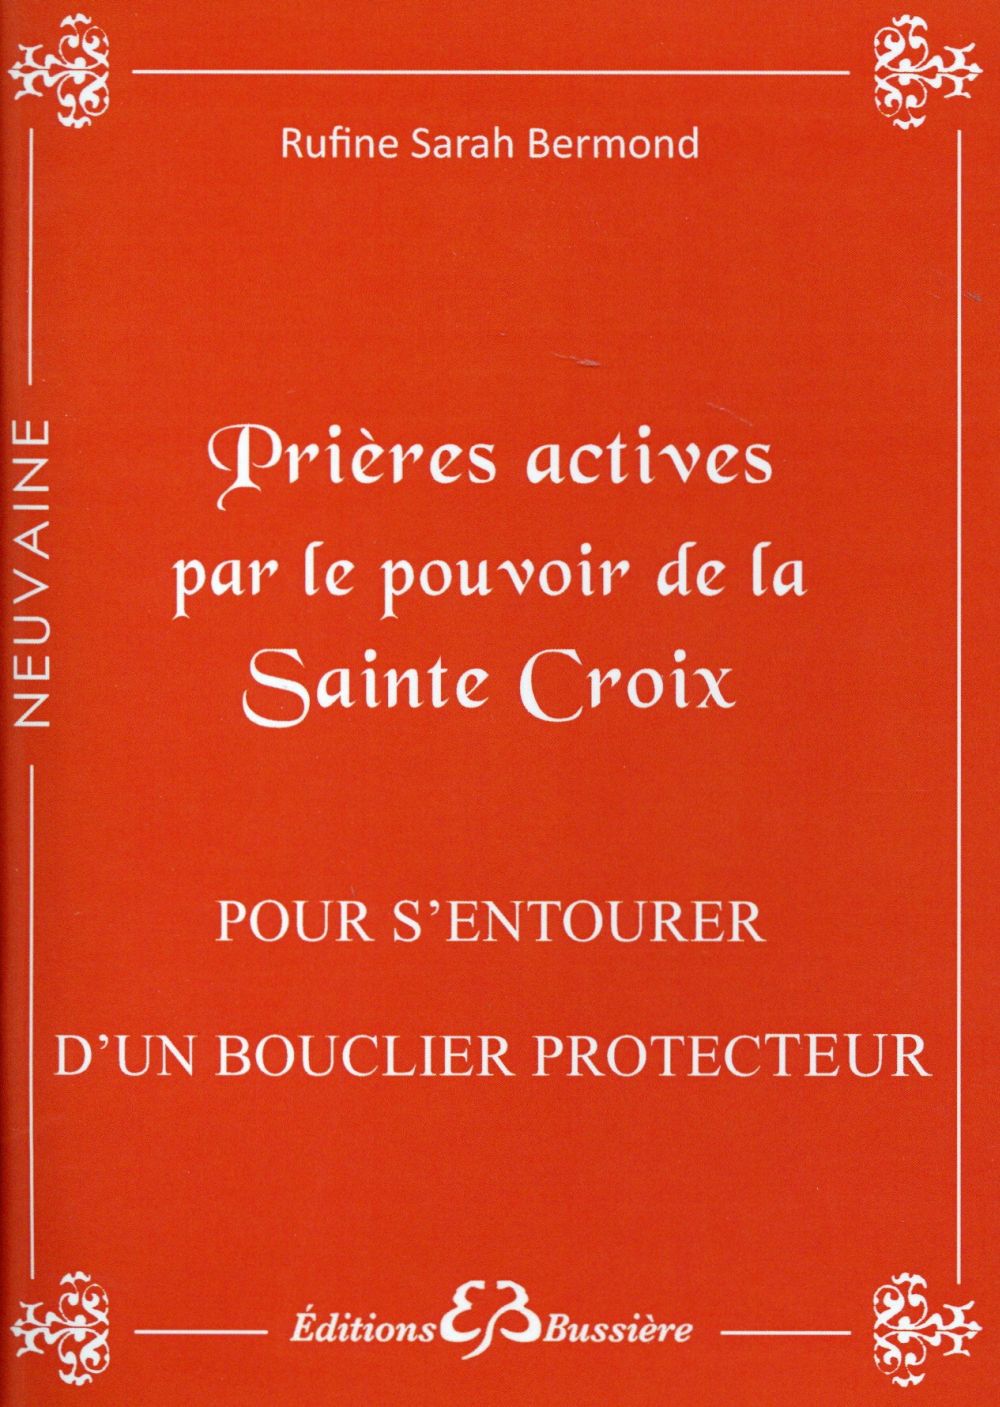 PRIERES ACTIVES PAR LE POUVOIR DE LA SAINTE CROIX - POUR S'ENTOURER D'UN BOUCLIER PROTECTEUR